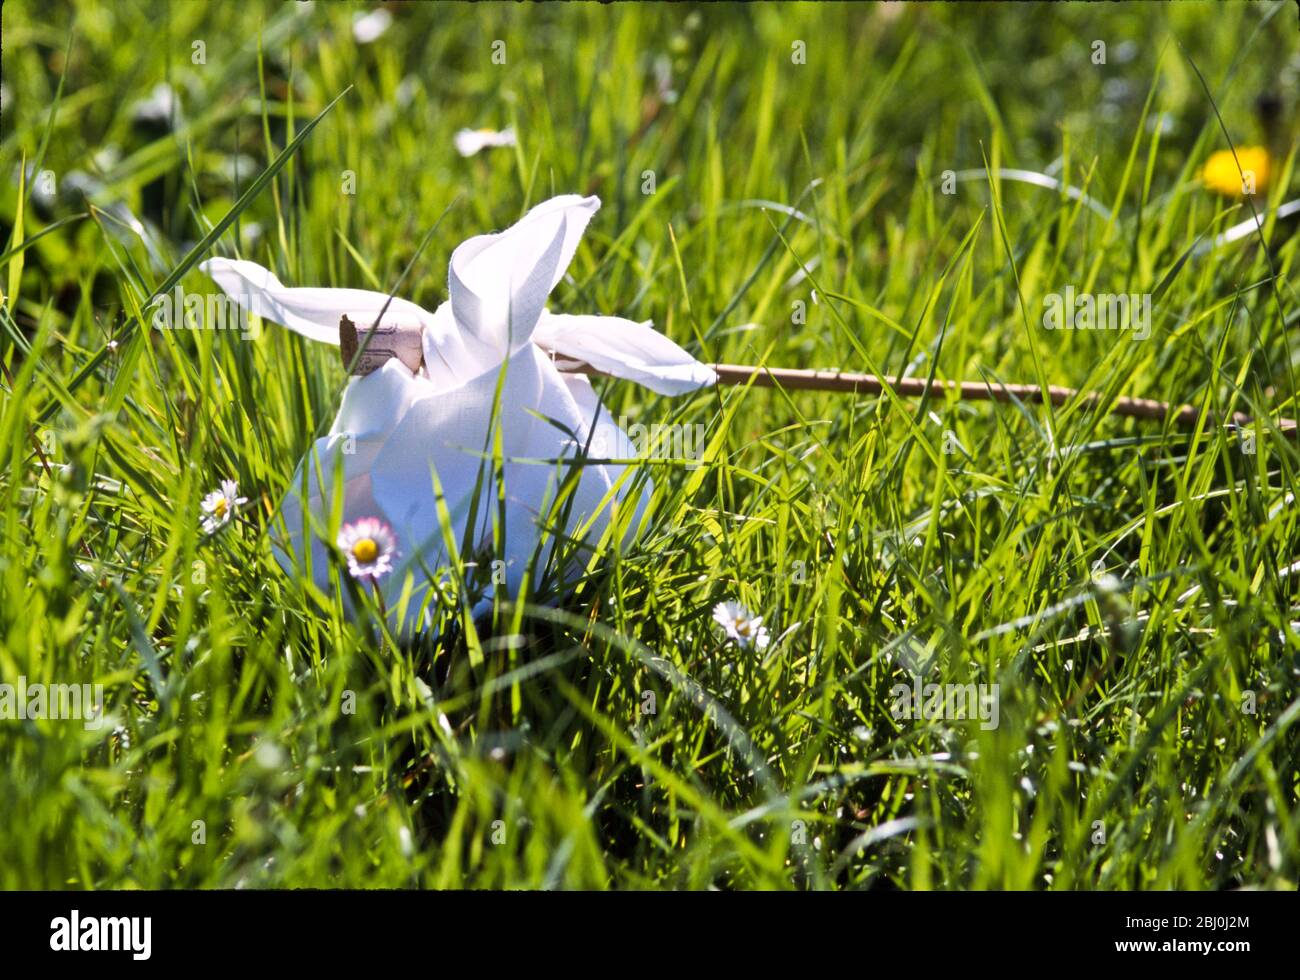 Picknick in einem Taschentuch auf einem Stock in langem Gras mit Gänseblümchen und Löwenzahn gebunden. - Stockfoto